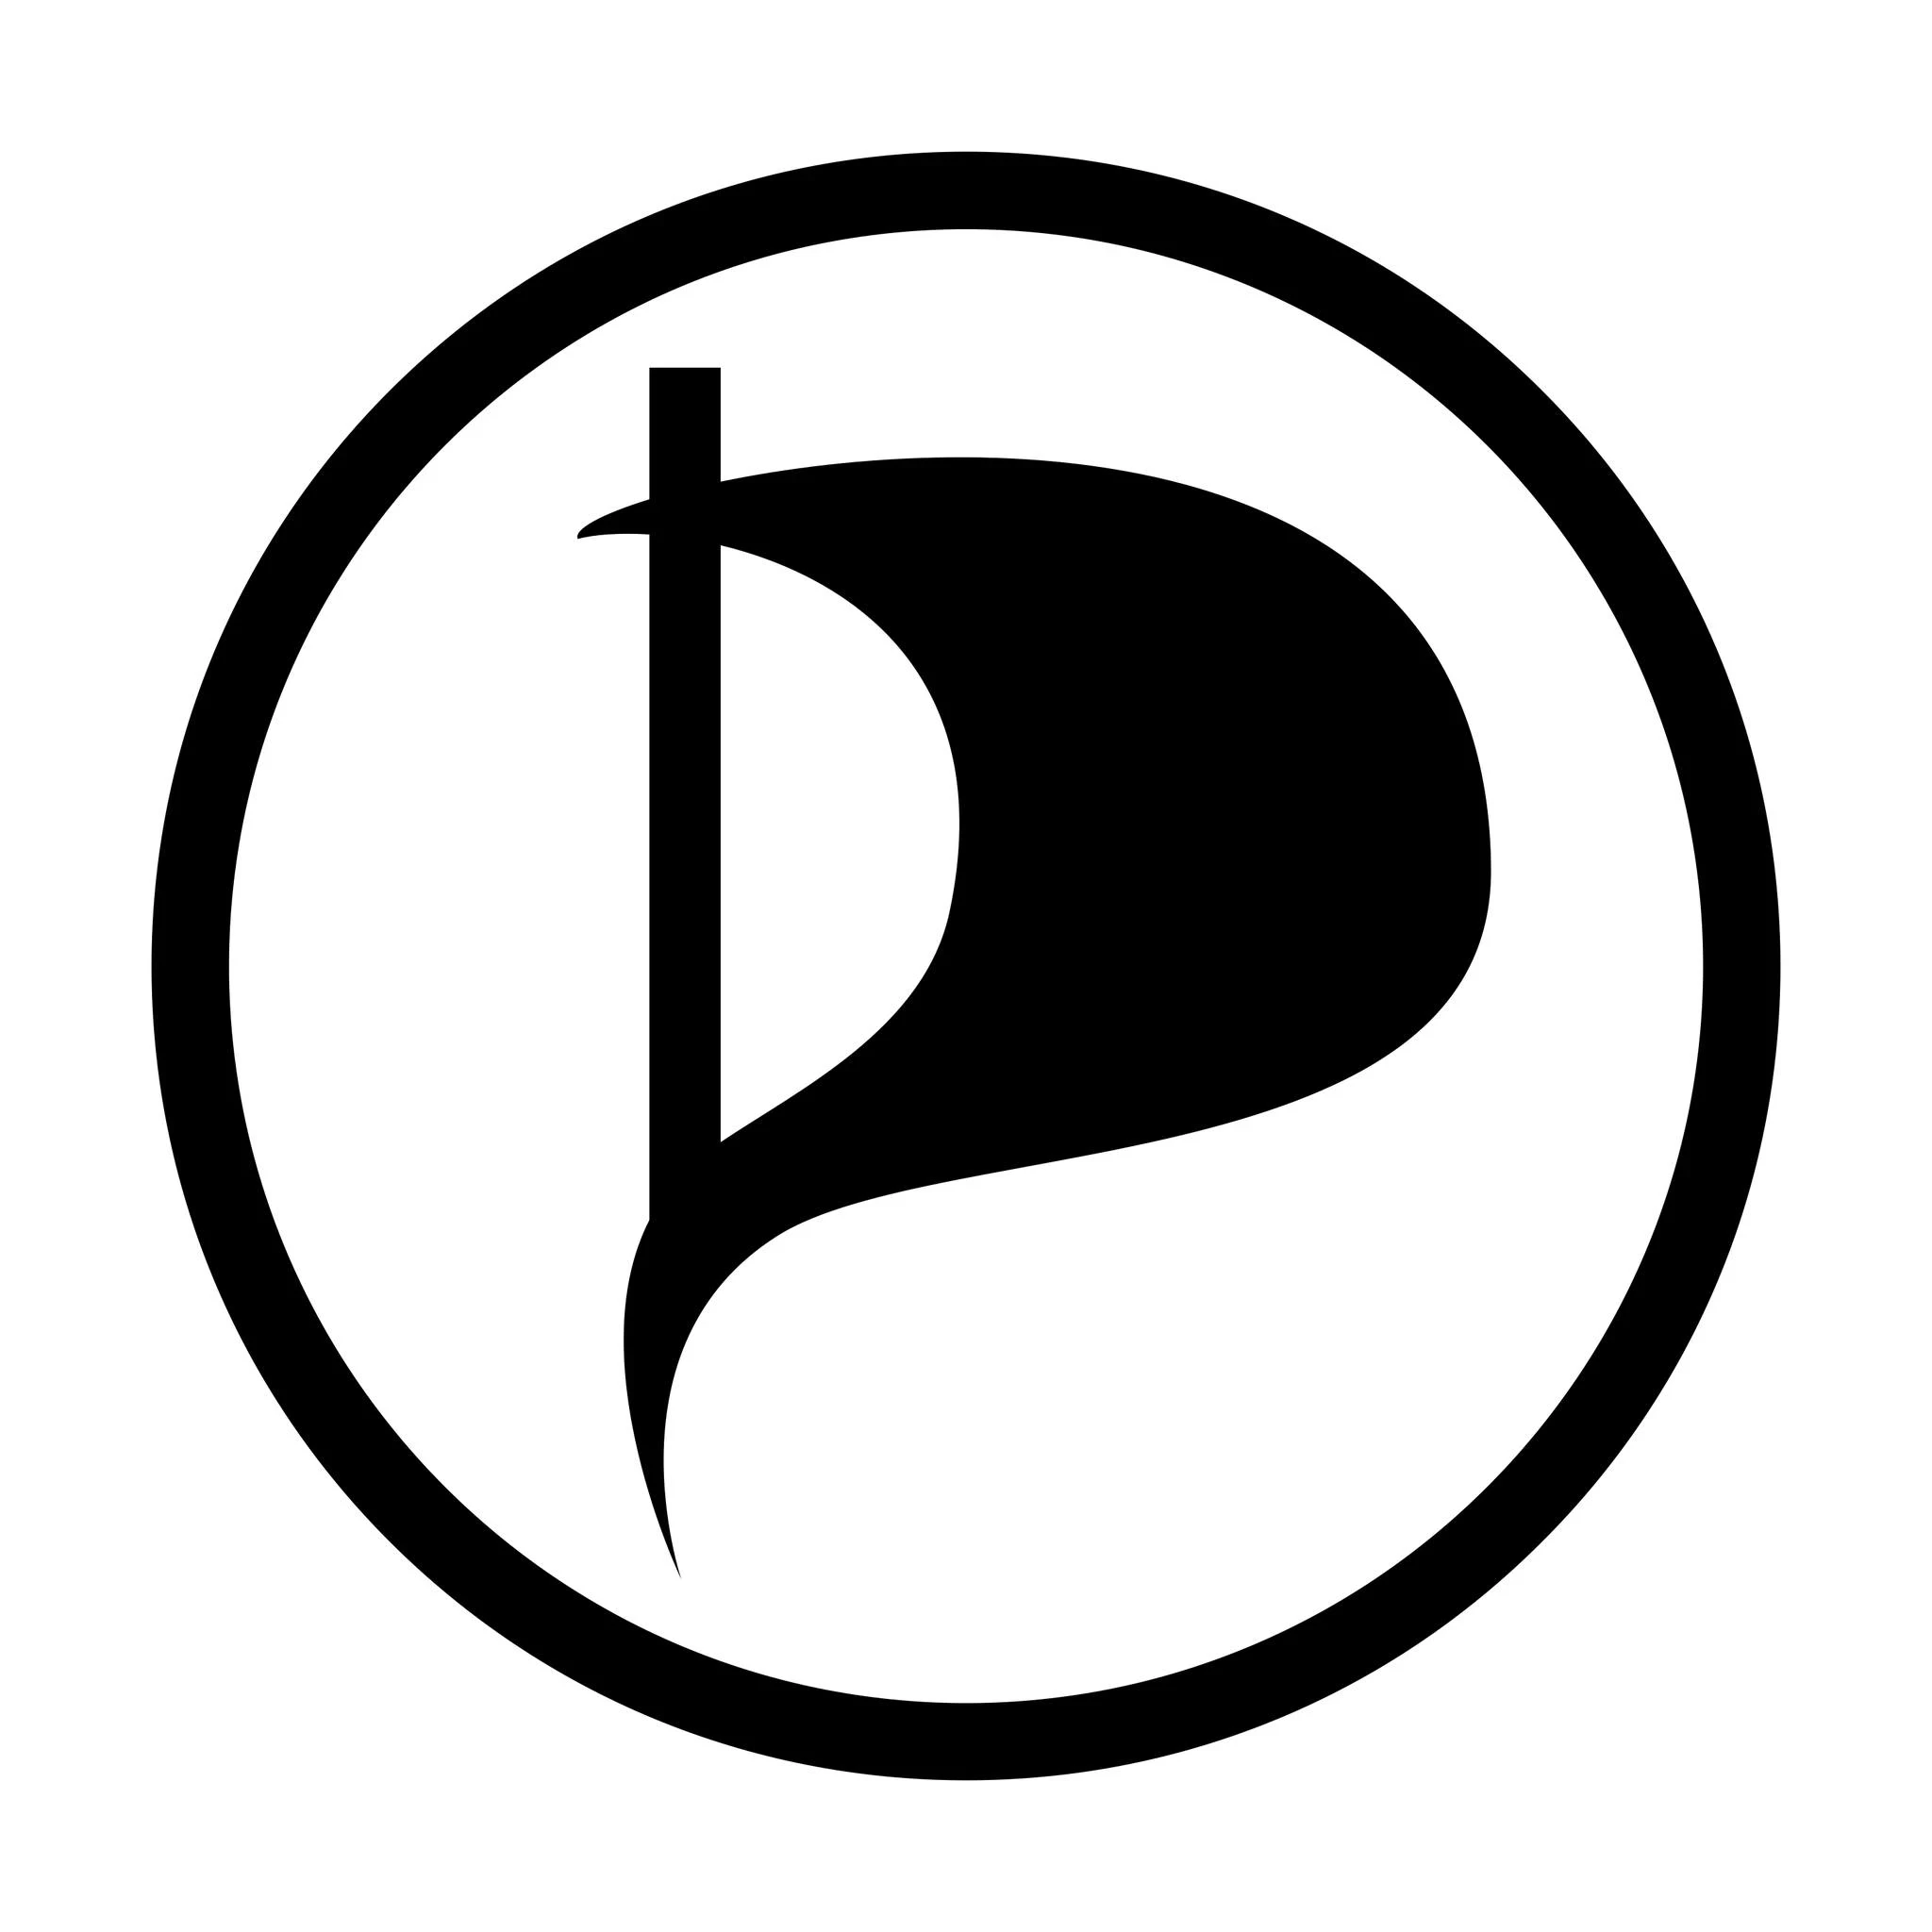 Pirati logo.jpeg